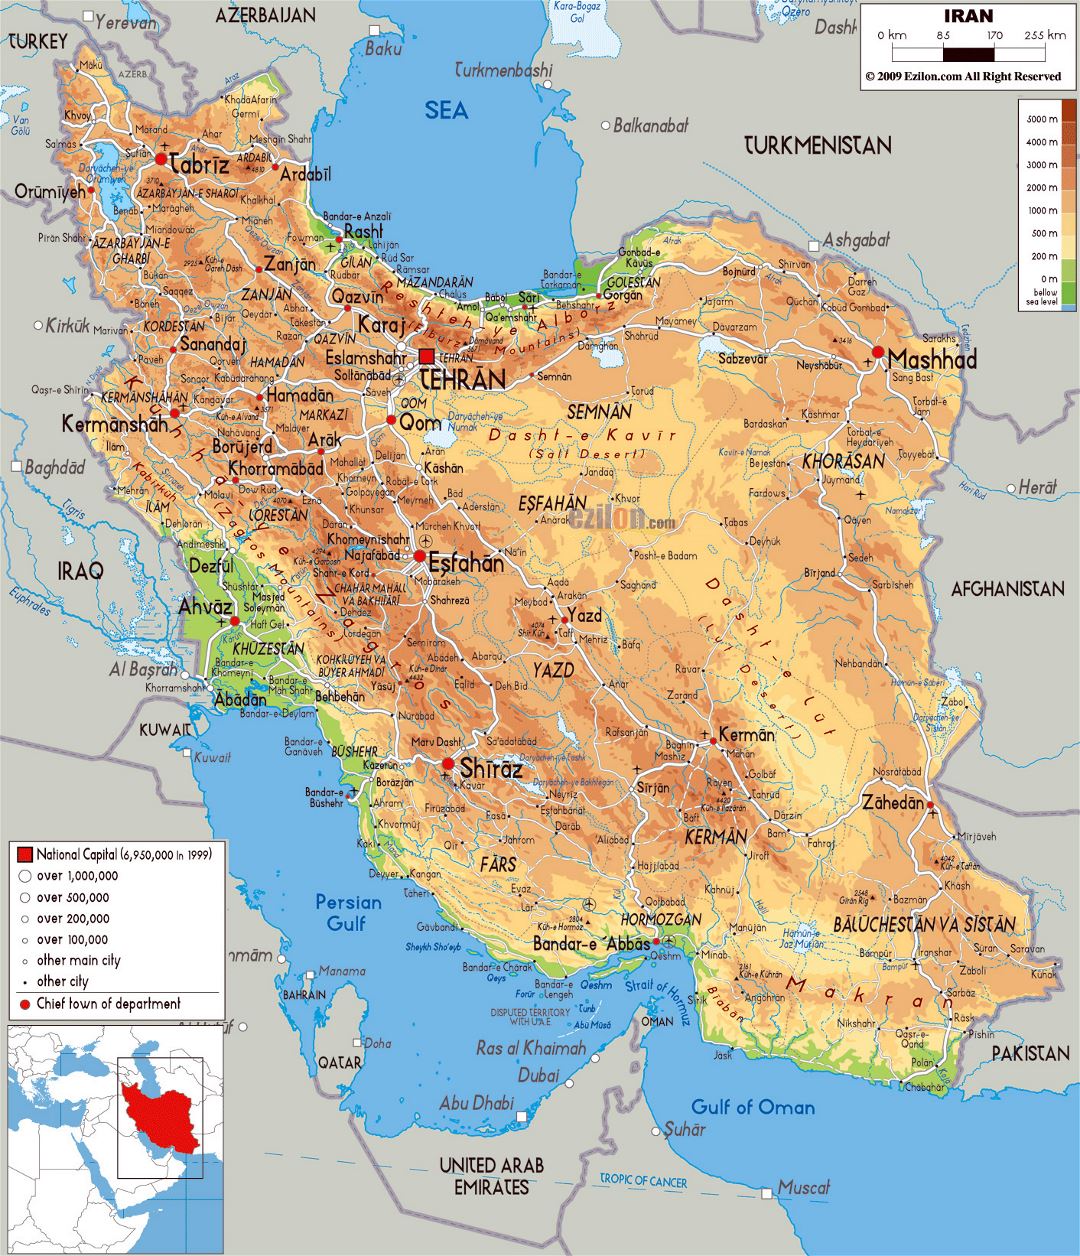 Grande mapa físico de Irán con todas ciudades, carreteras y aeropuertos